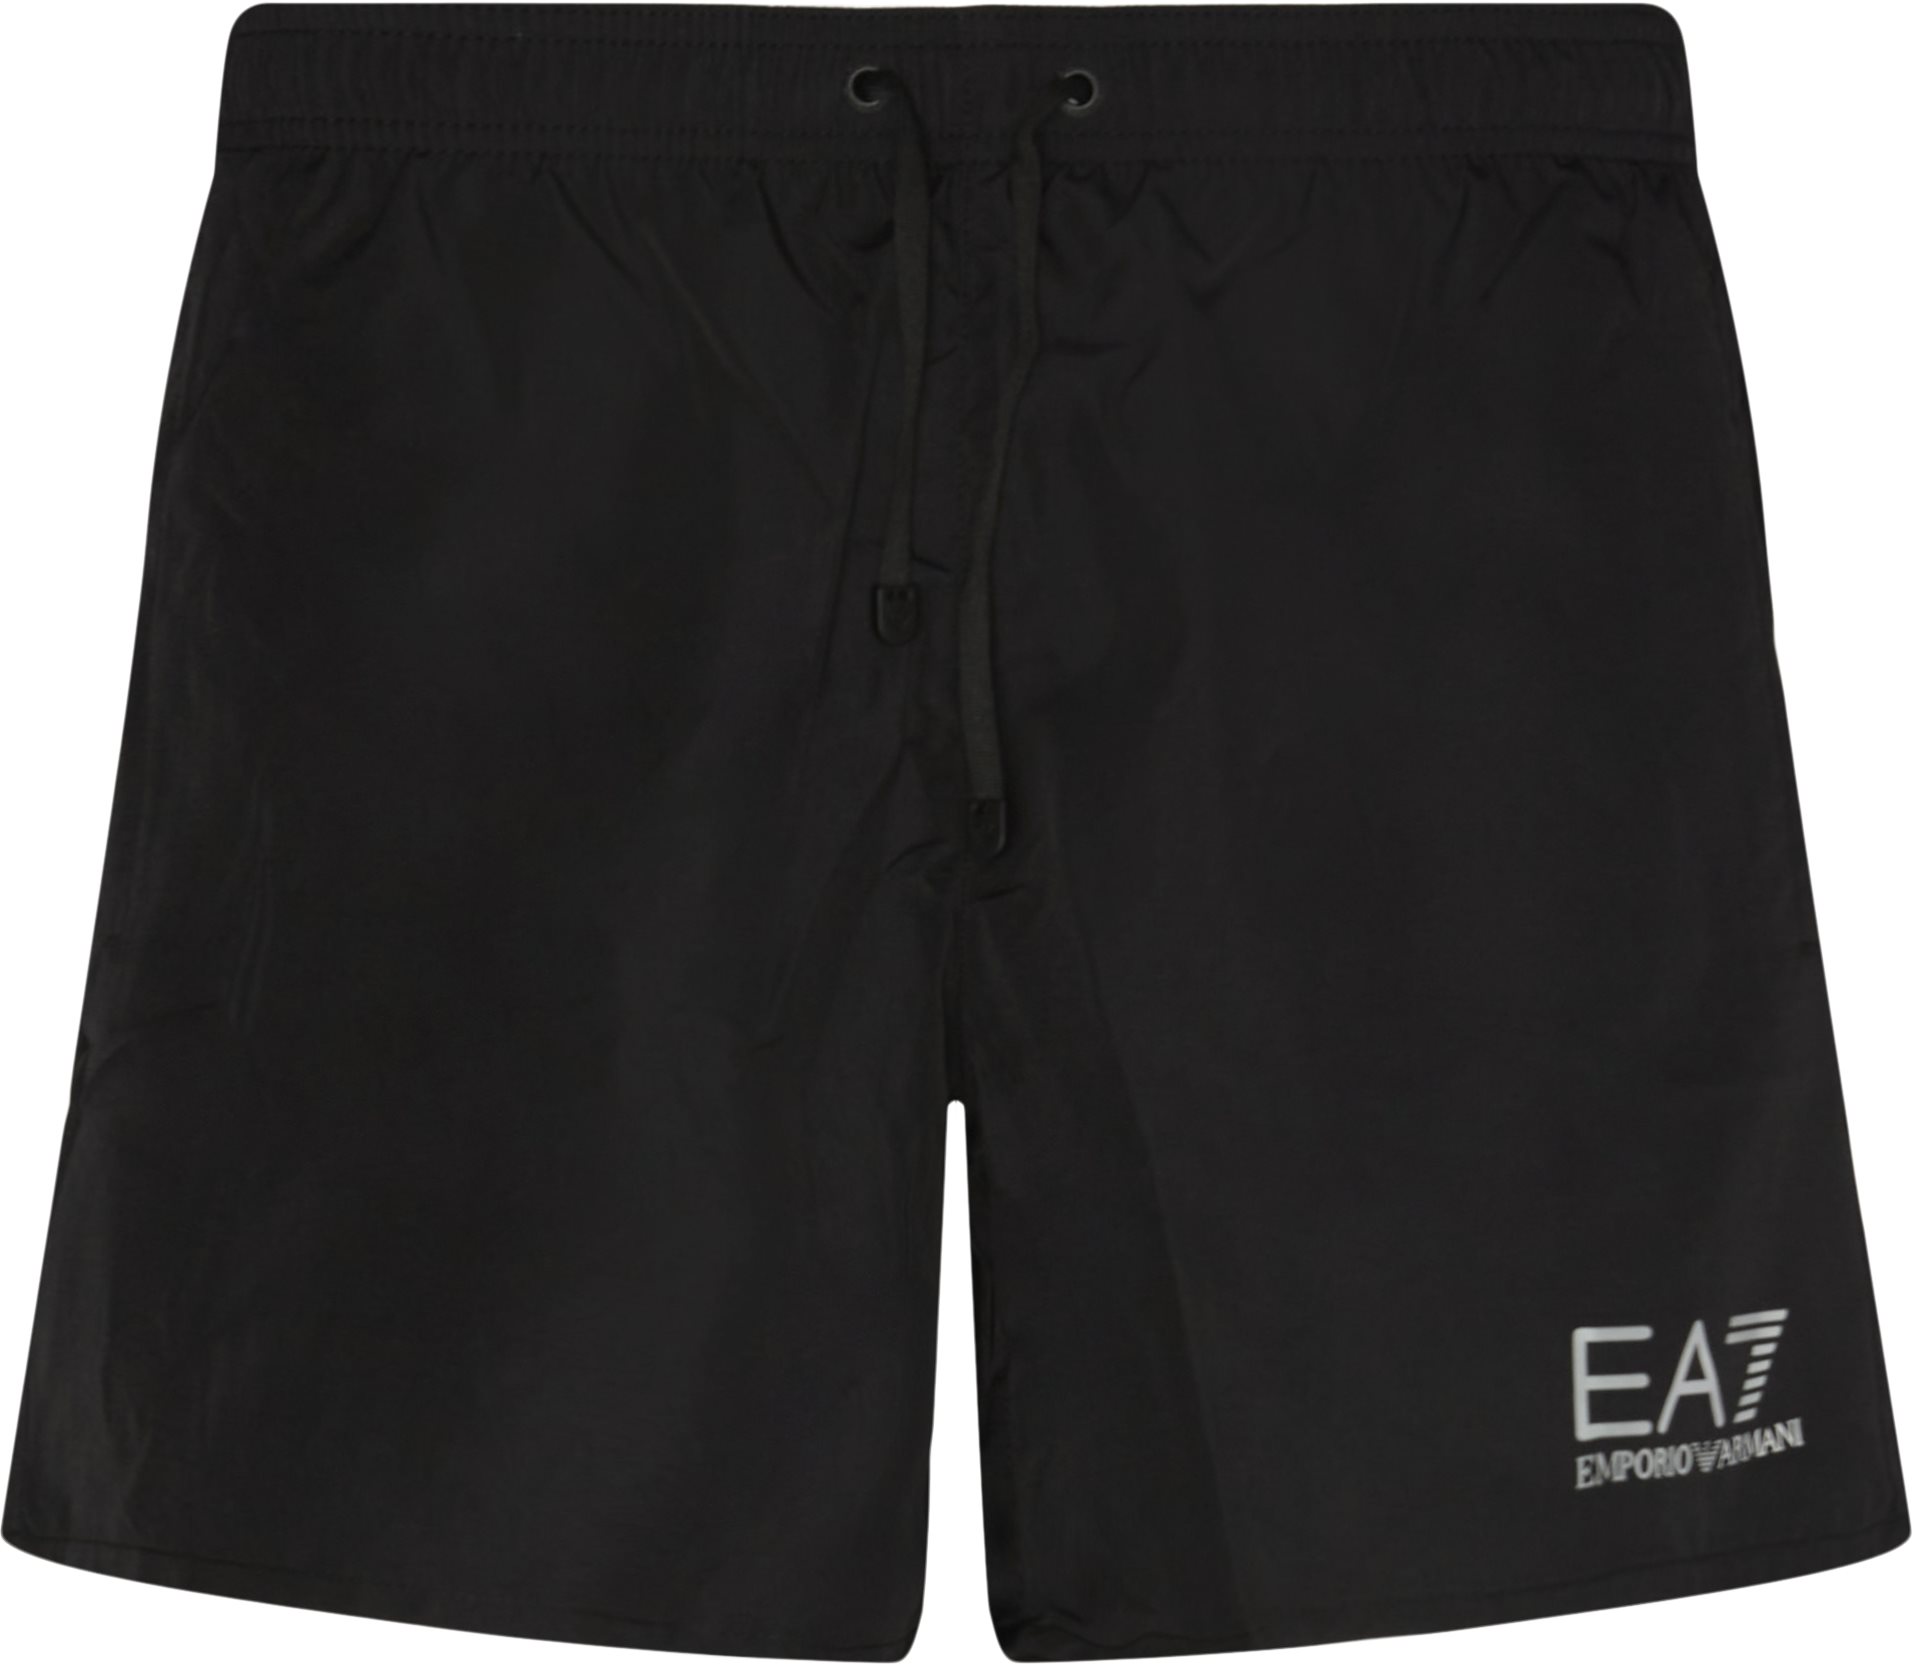 CC721 902000 Badshorts - Shorts - Regular fit - Svart